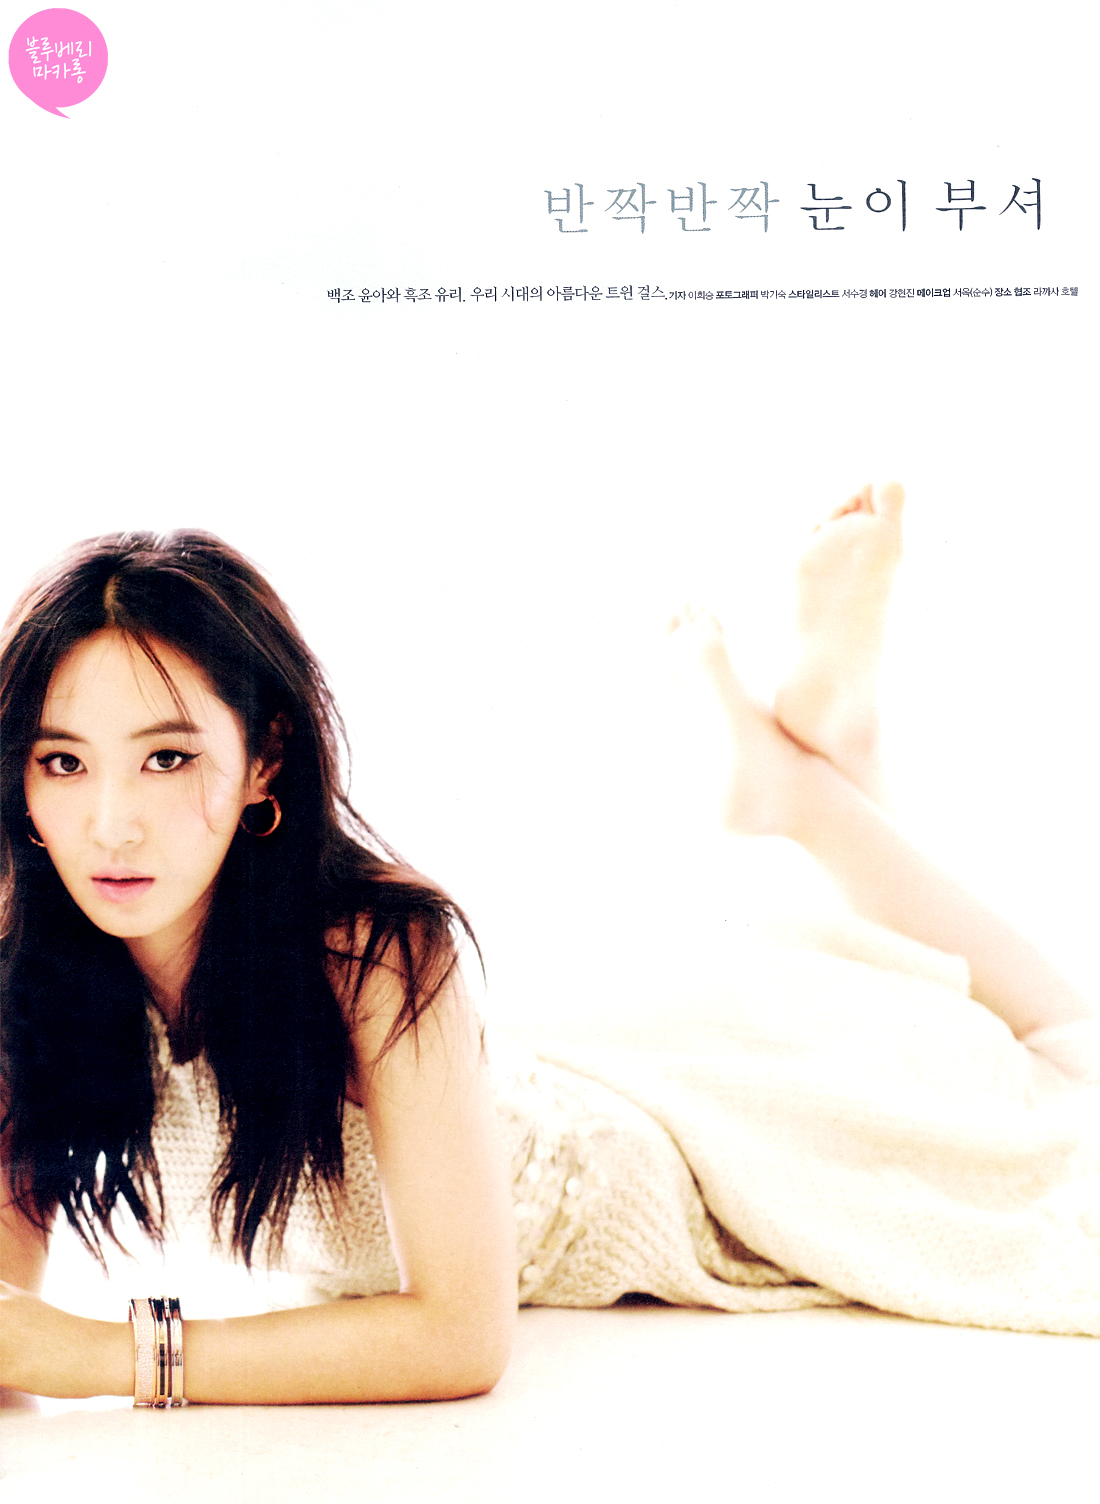 [PIC][03-07-2013]YoonA và Yuri xuất hiện trên ấn phẩm tháng 7 của tạp chí "HIGH CUT" 0239624251D4E405074E41